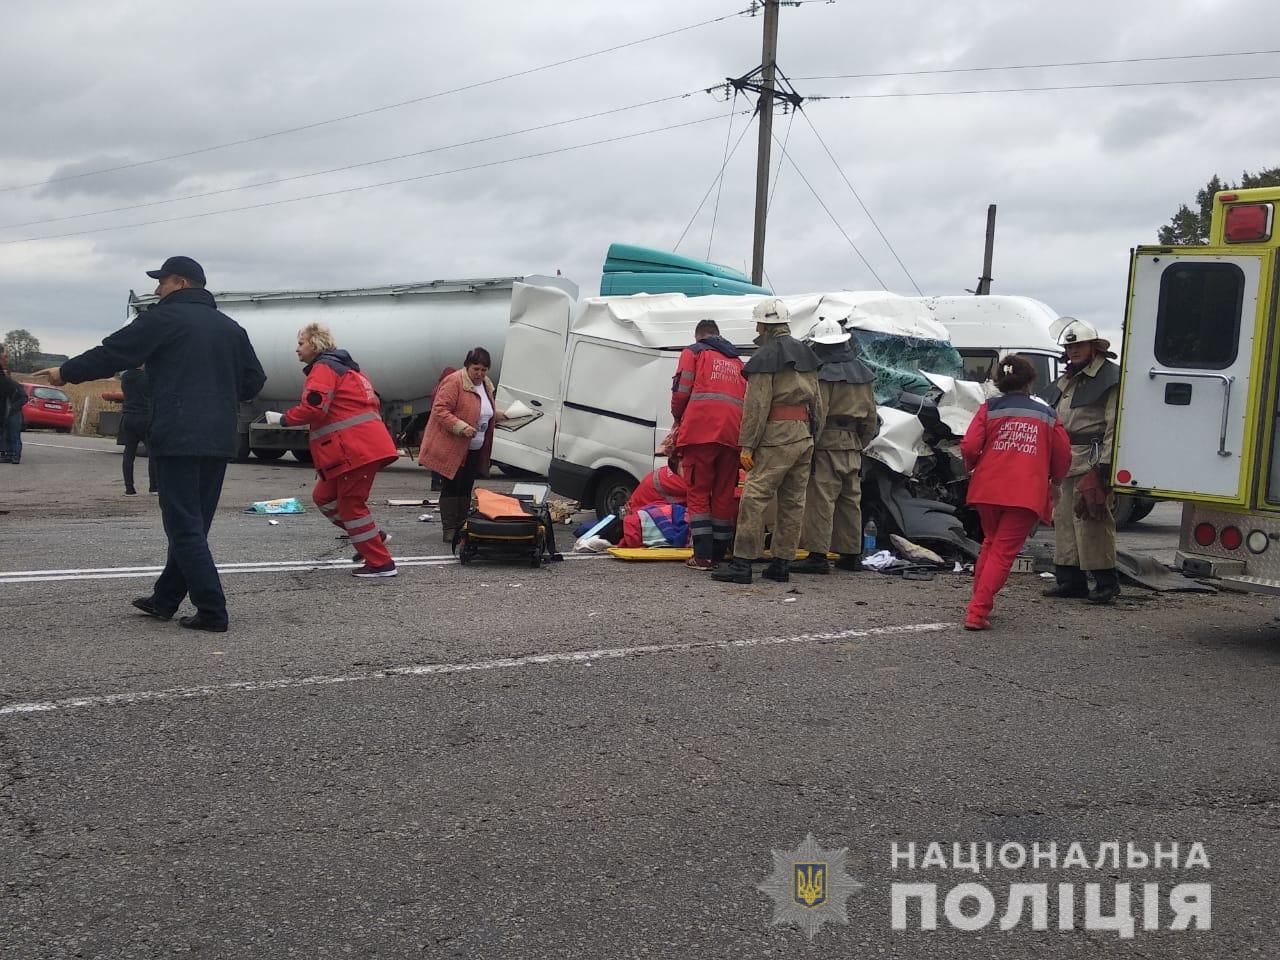 Авария с грузовиком: трое пострадавших, в том числе ребенок (фото)